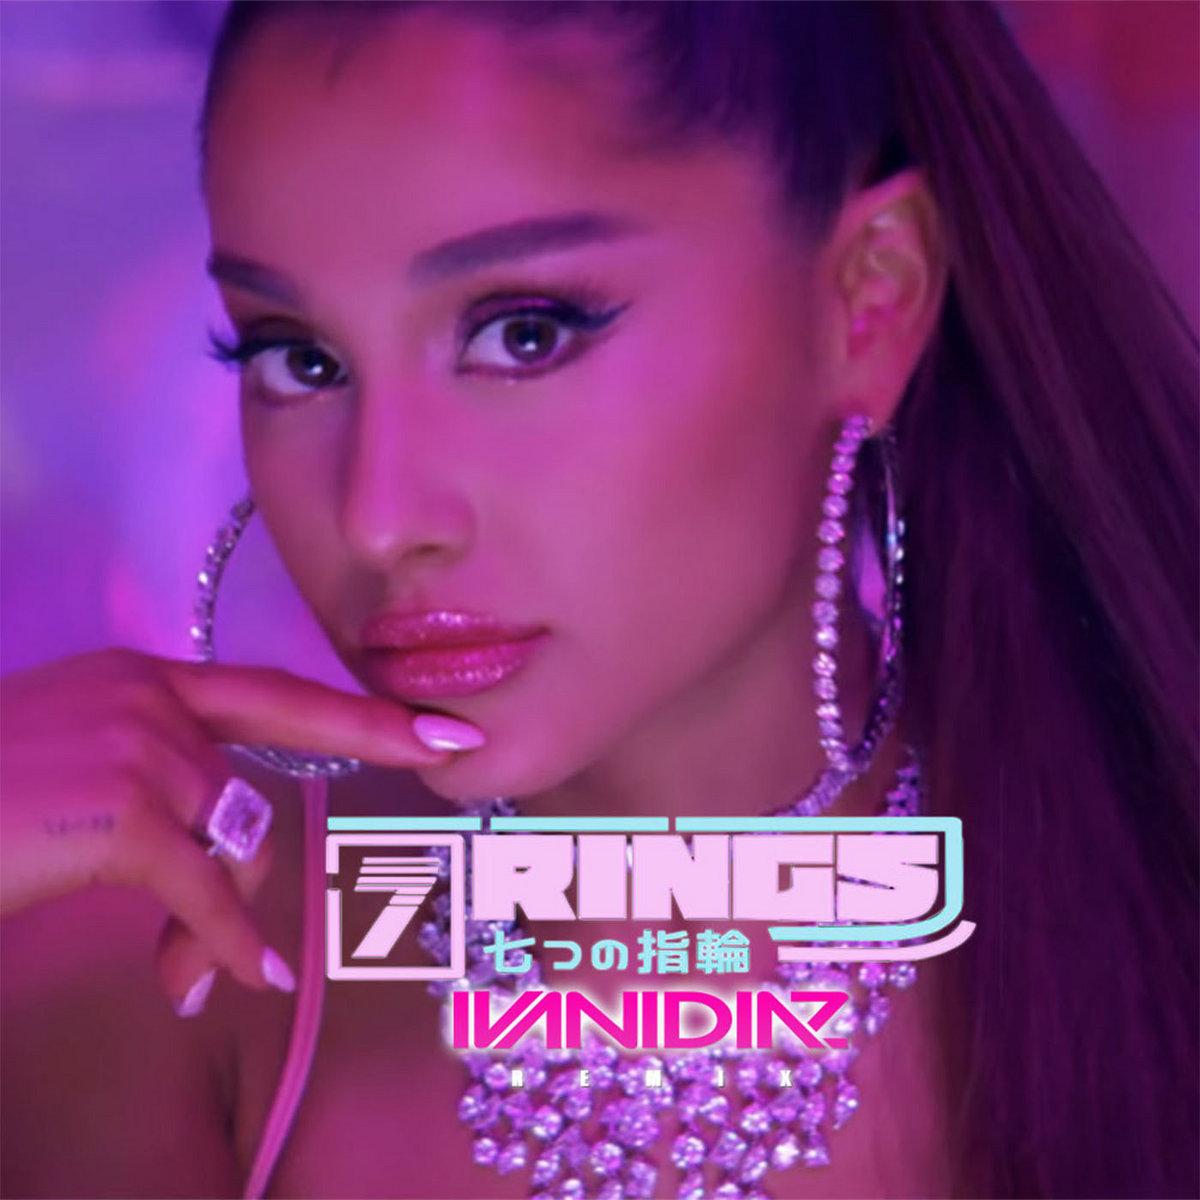 7 rings - Ariana Grande (Ivan Diaz Remix) | Ivan Diaz, Ariana Grande ...